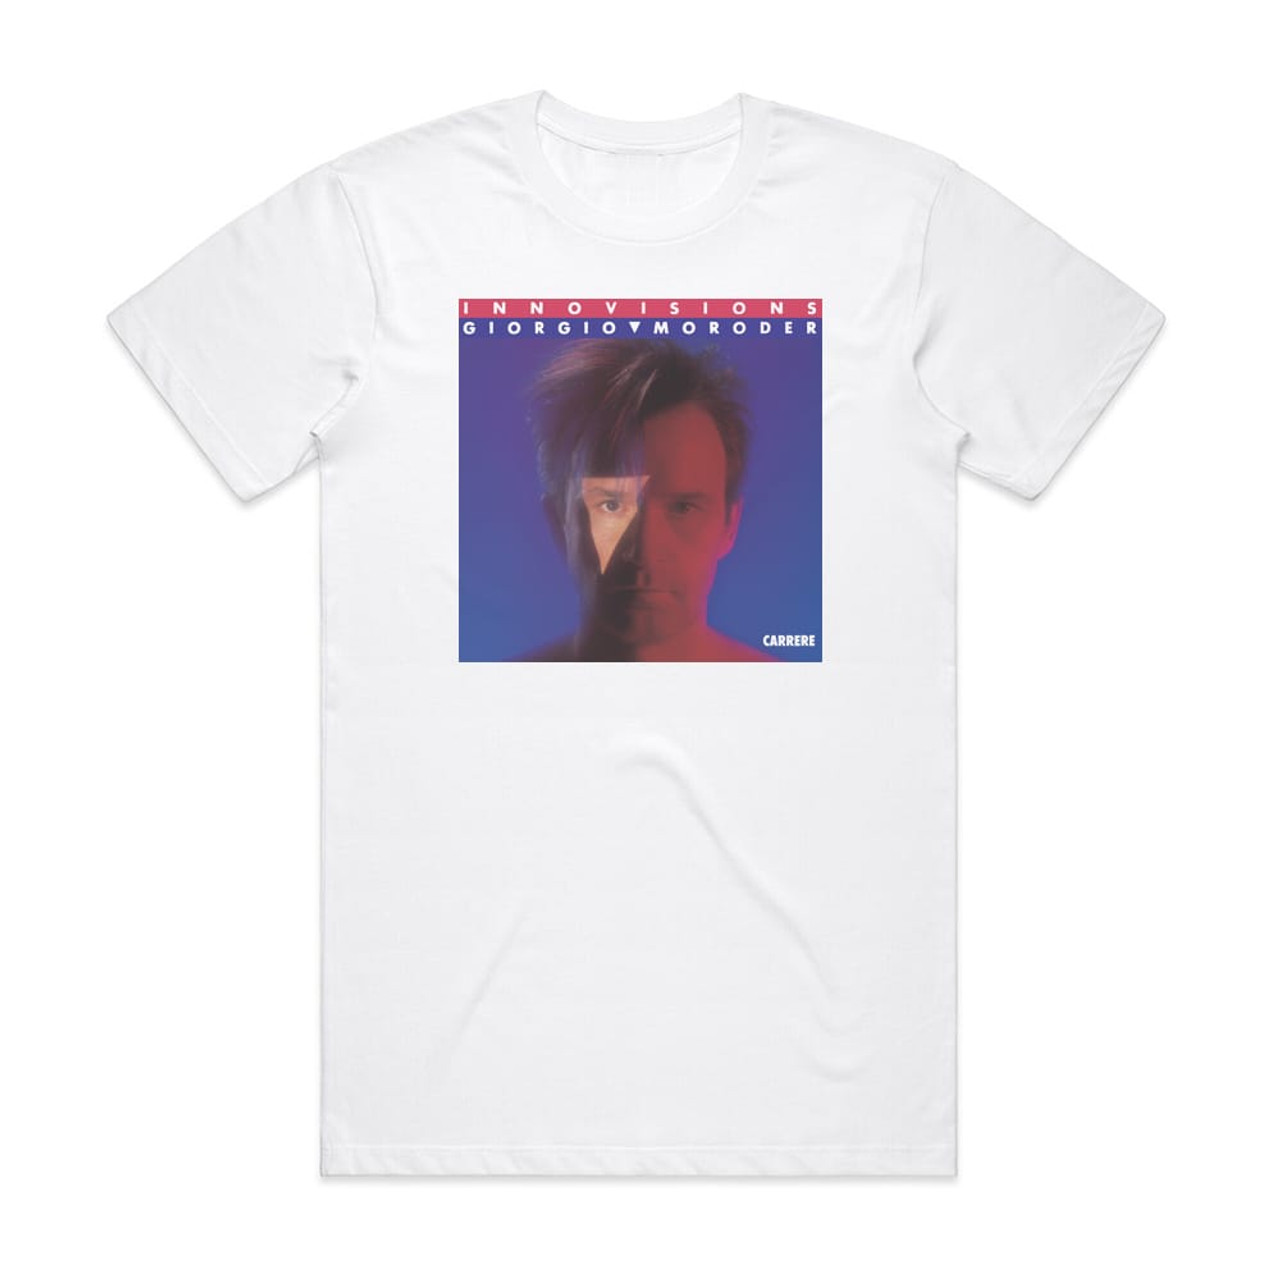 Giorgio Moroder Innovisions 1 Album Cover T-Shirt White